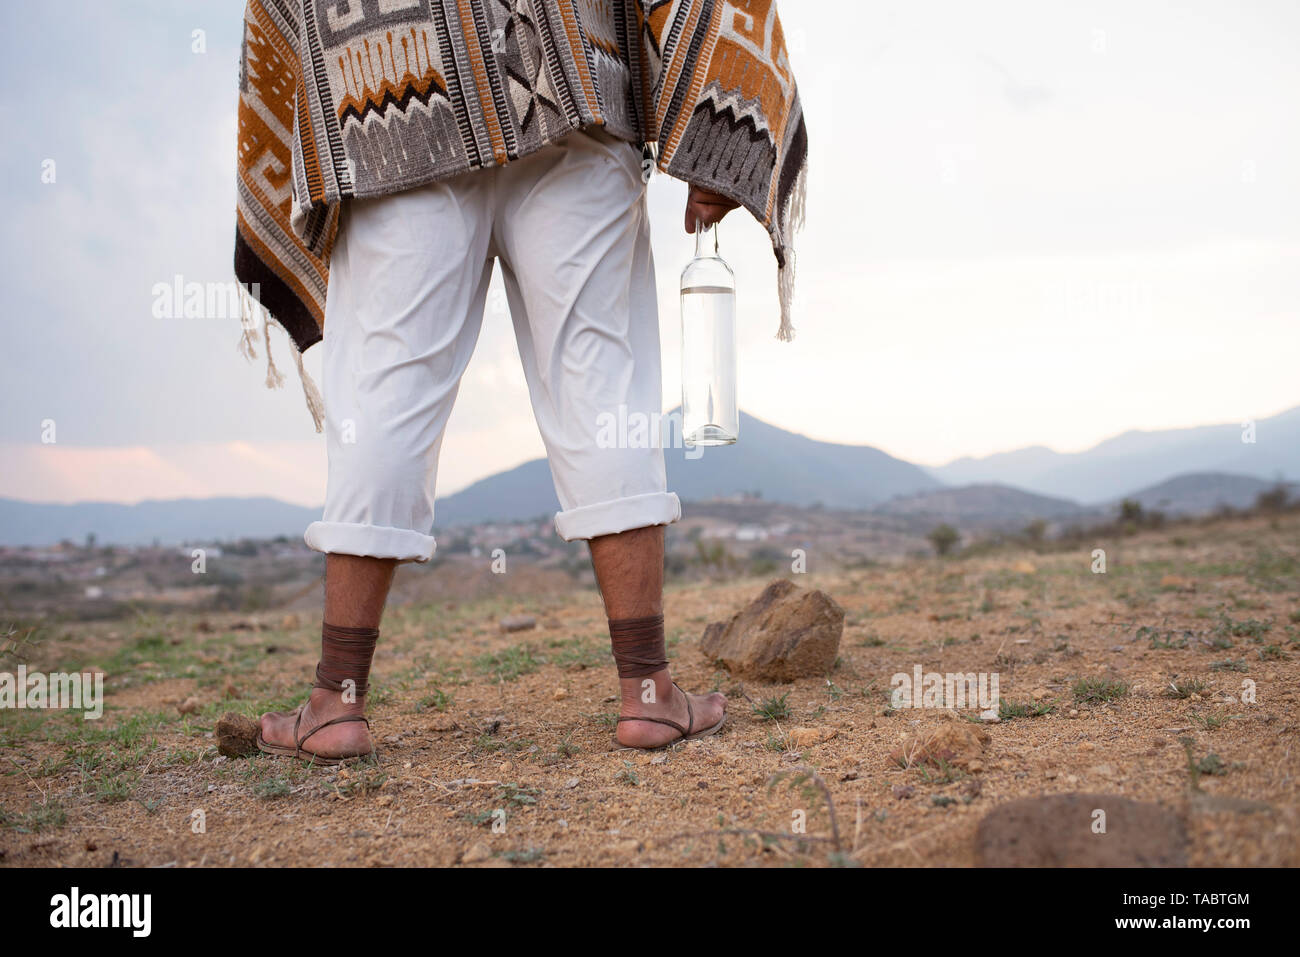 Mann von hinten stehend auf trockenem Boden tragen weiße Hosen, Zapotekisch Wolldecke, alte Sandalen und eine Flasche Mezcal. Oaxaca, Mexiko Stockfoto